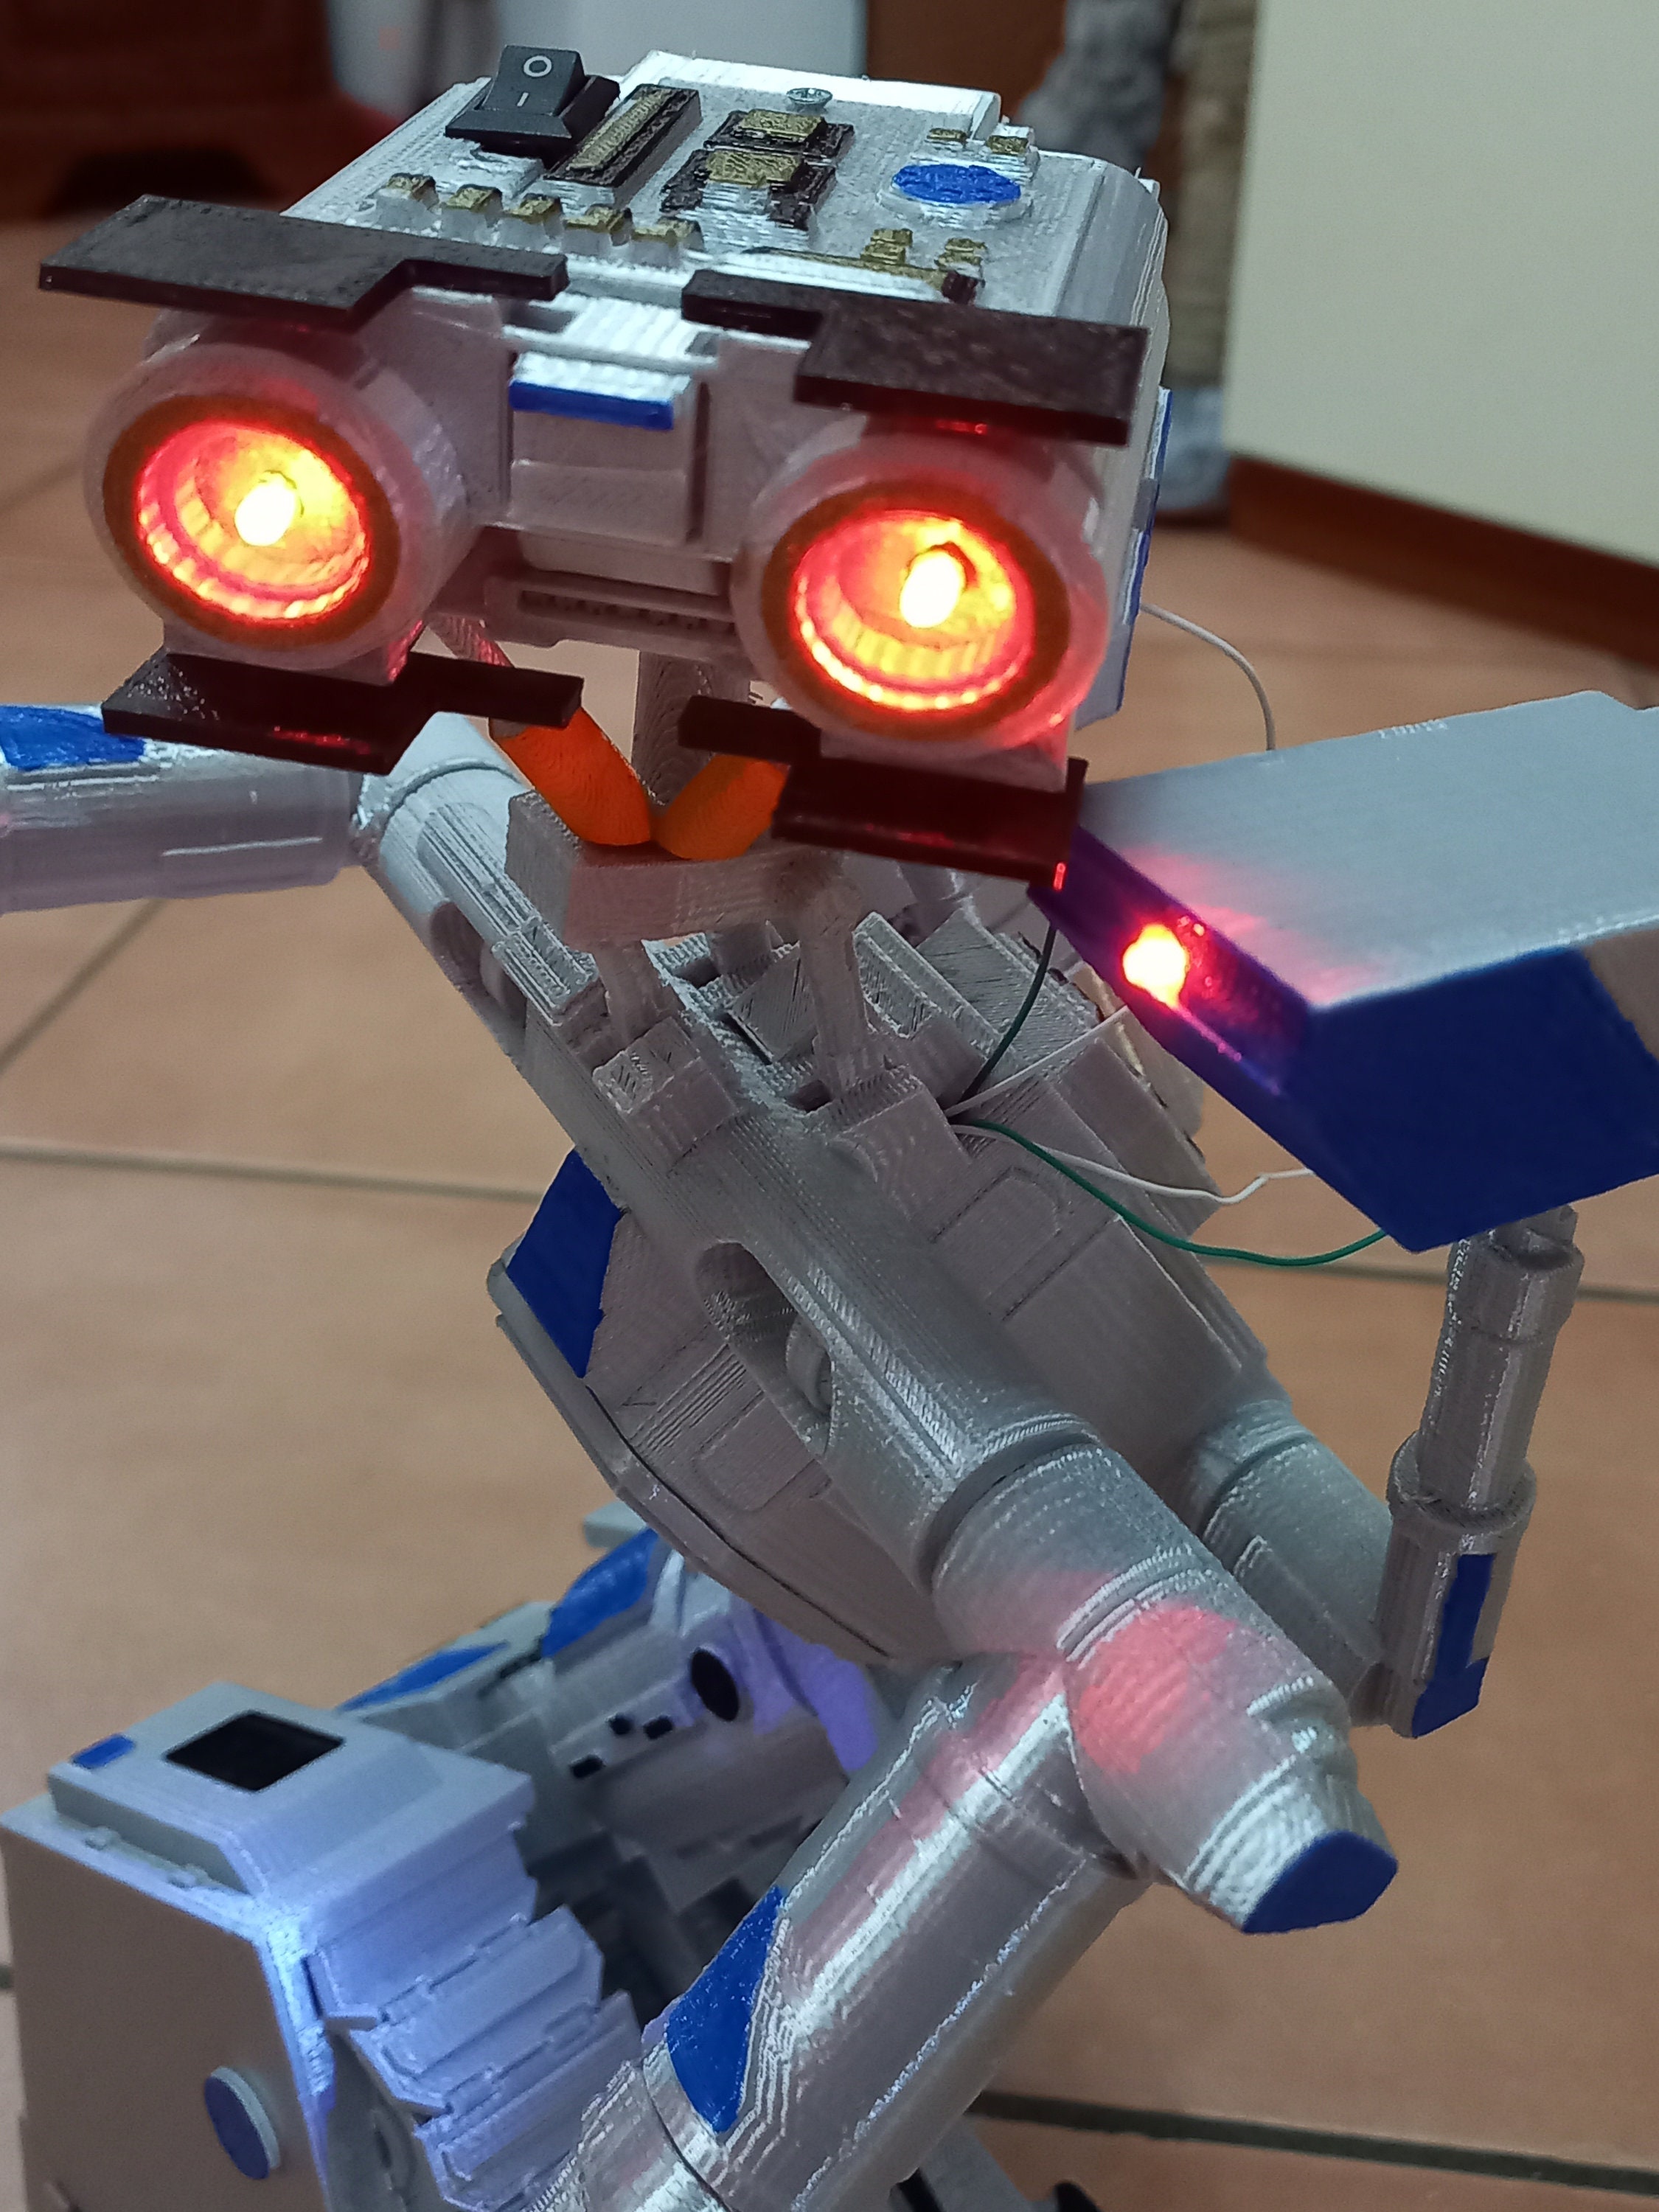 Johnny 5 NEW LED! corto circuito robot 30 cm stupendo Short circuit 